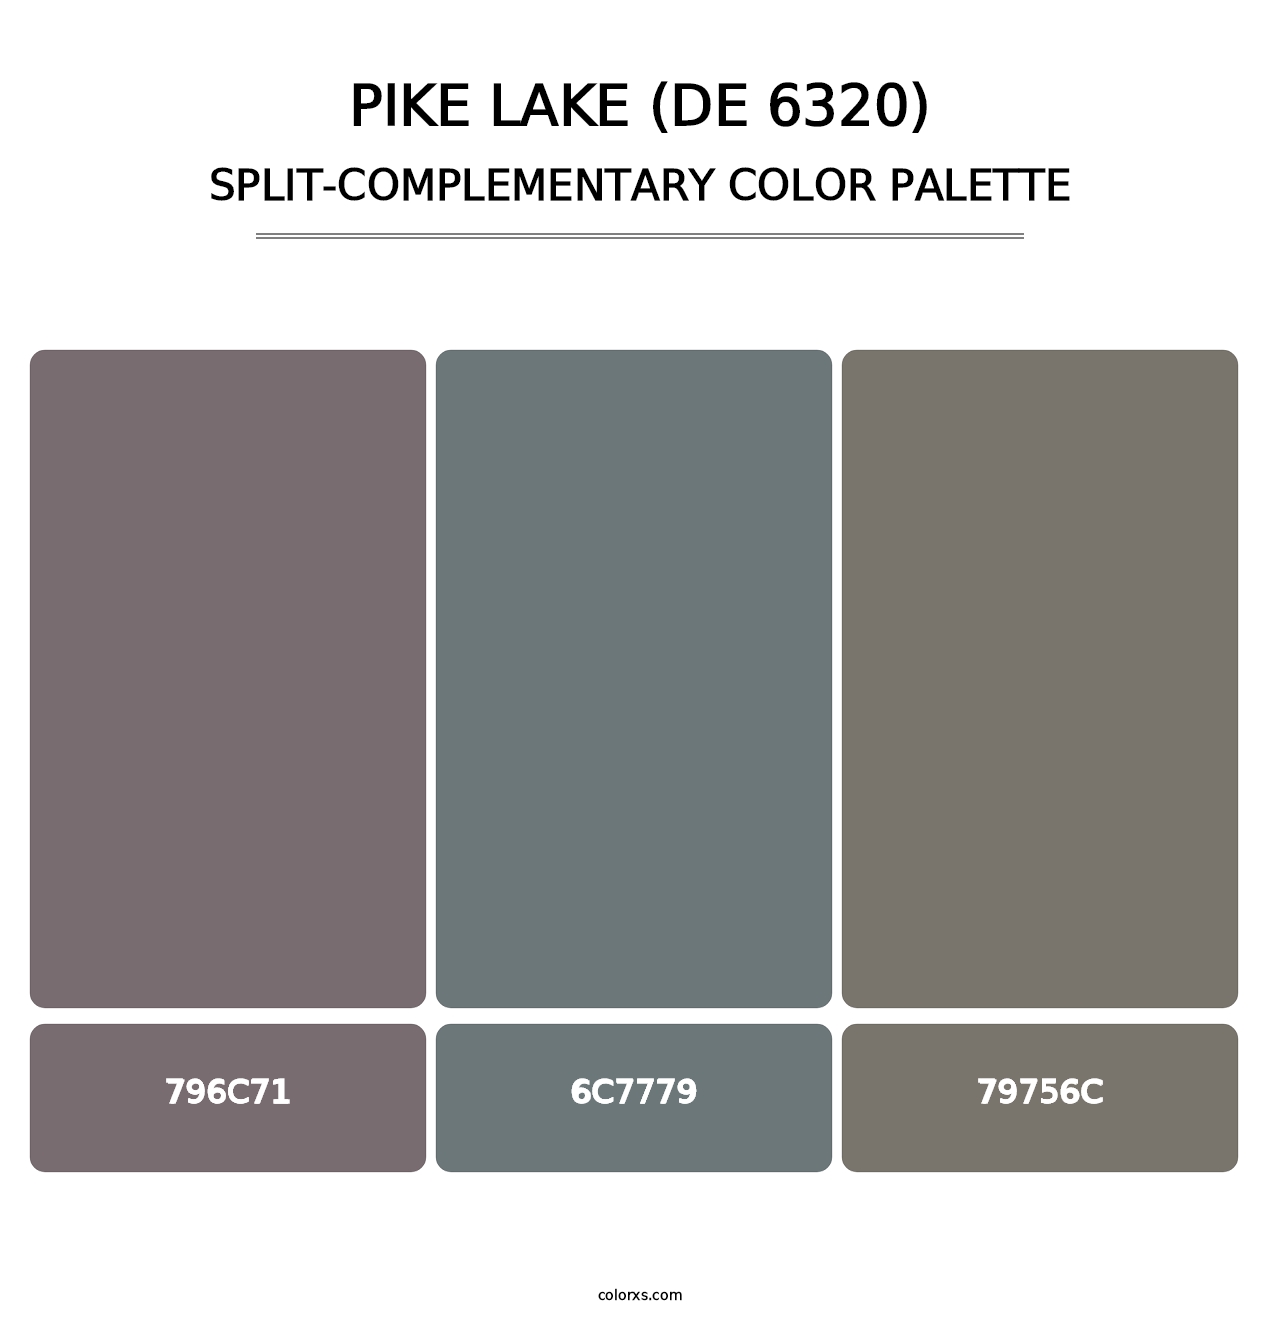 Pike Lake (DE 6320) - Split-Complementary Color Palette